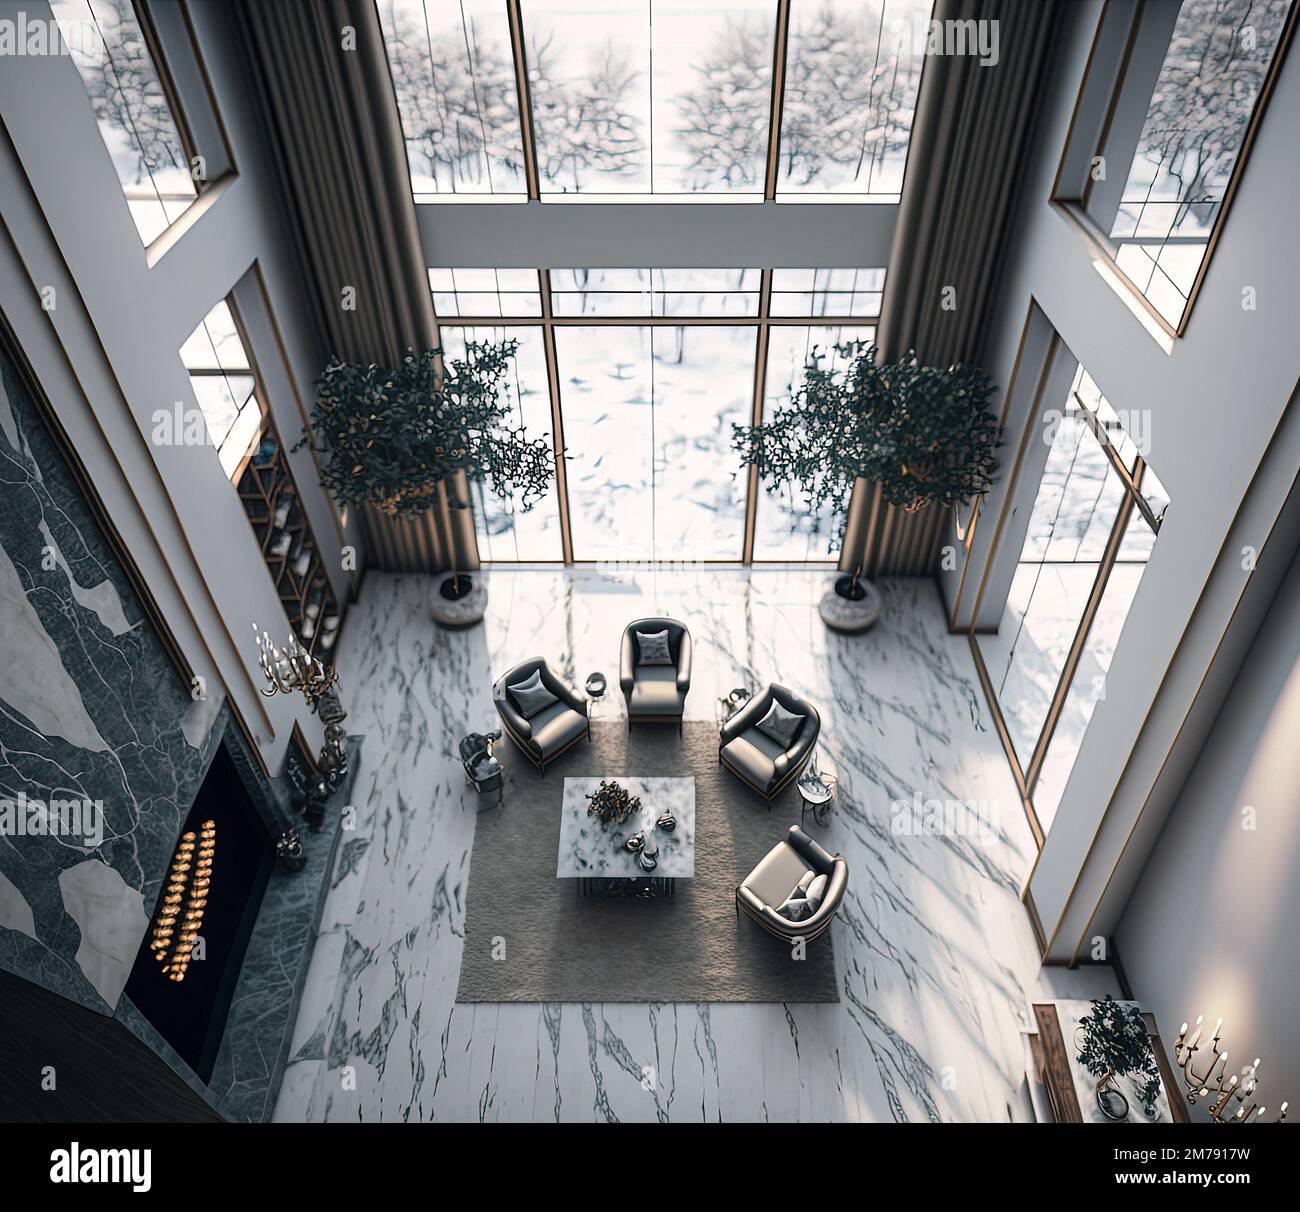 Vista superior diseño interior de lujoso apartamento con piso de mármol, techos altos y ventanas de vidrio. Concepto art deco. Foto de stock